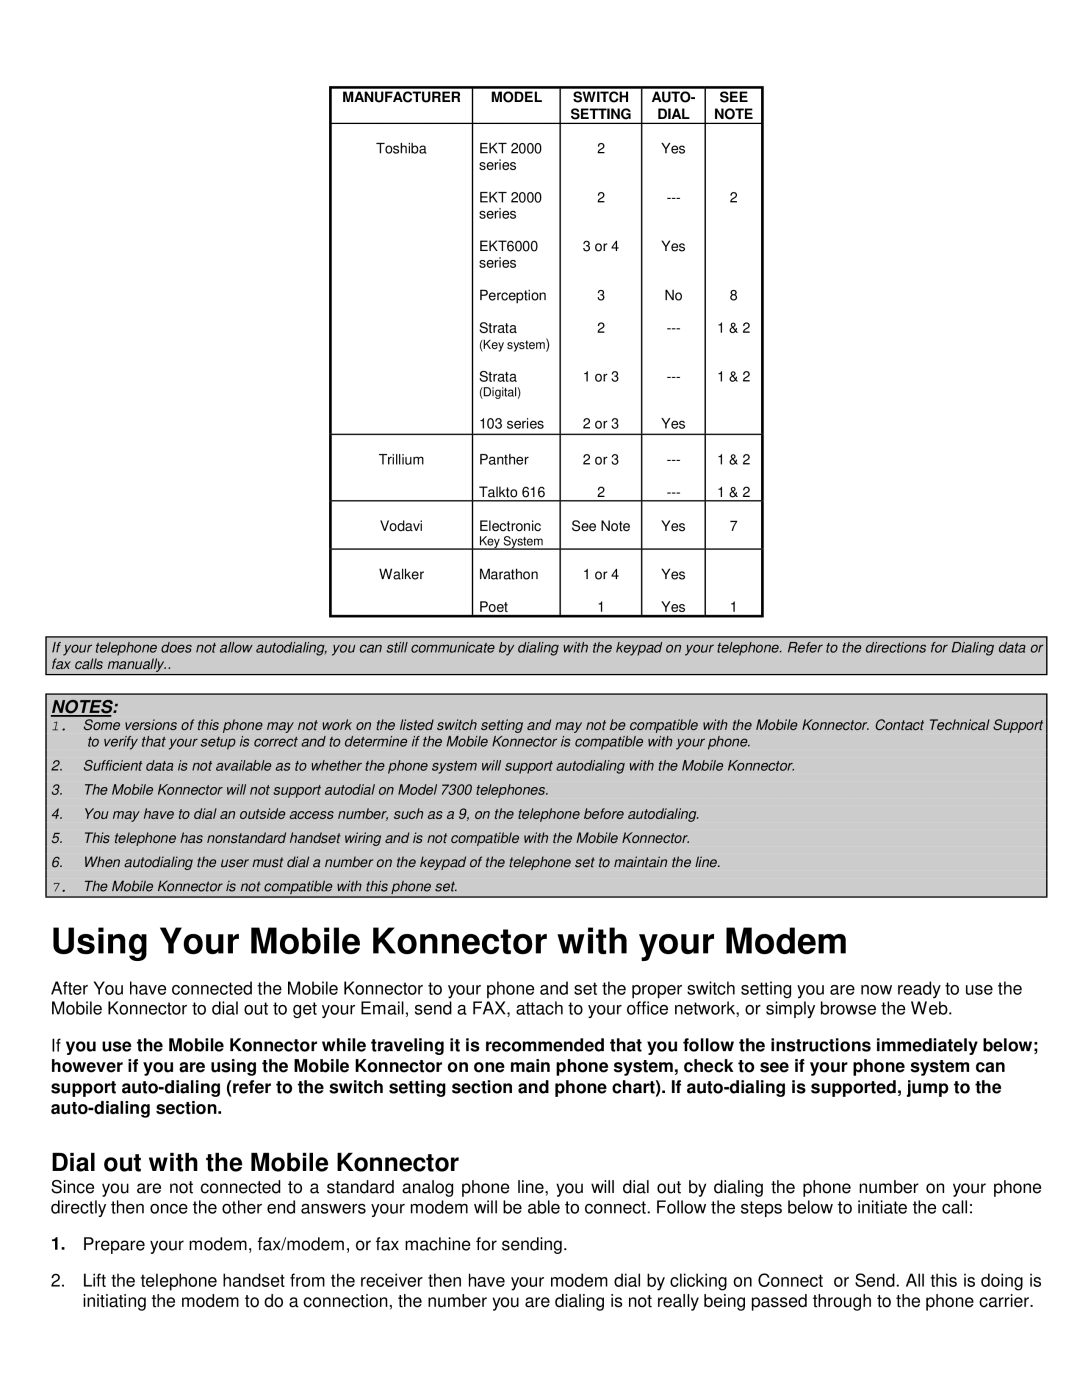 Konexx MOBILE KONNECTOR manual Using Your Mobile Konnector with your Modem, Dial out with the Mobile Konnector 